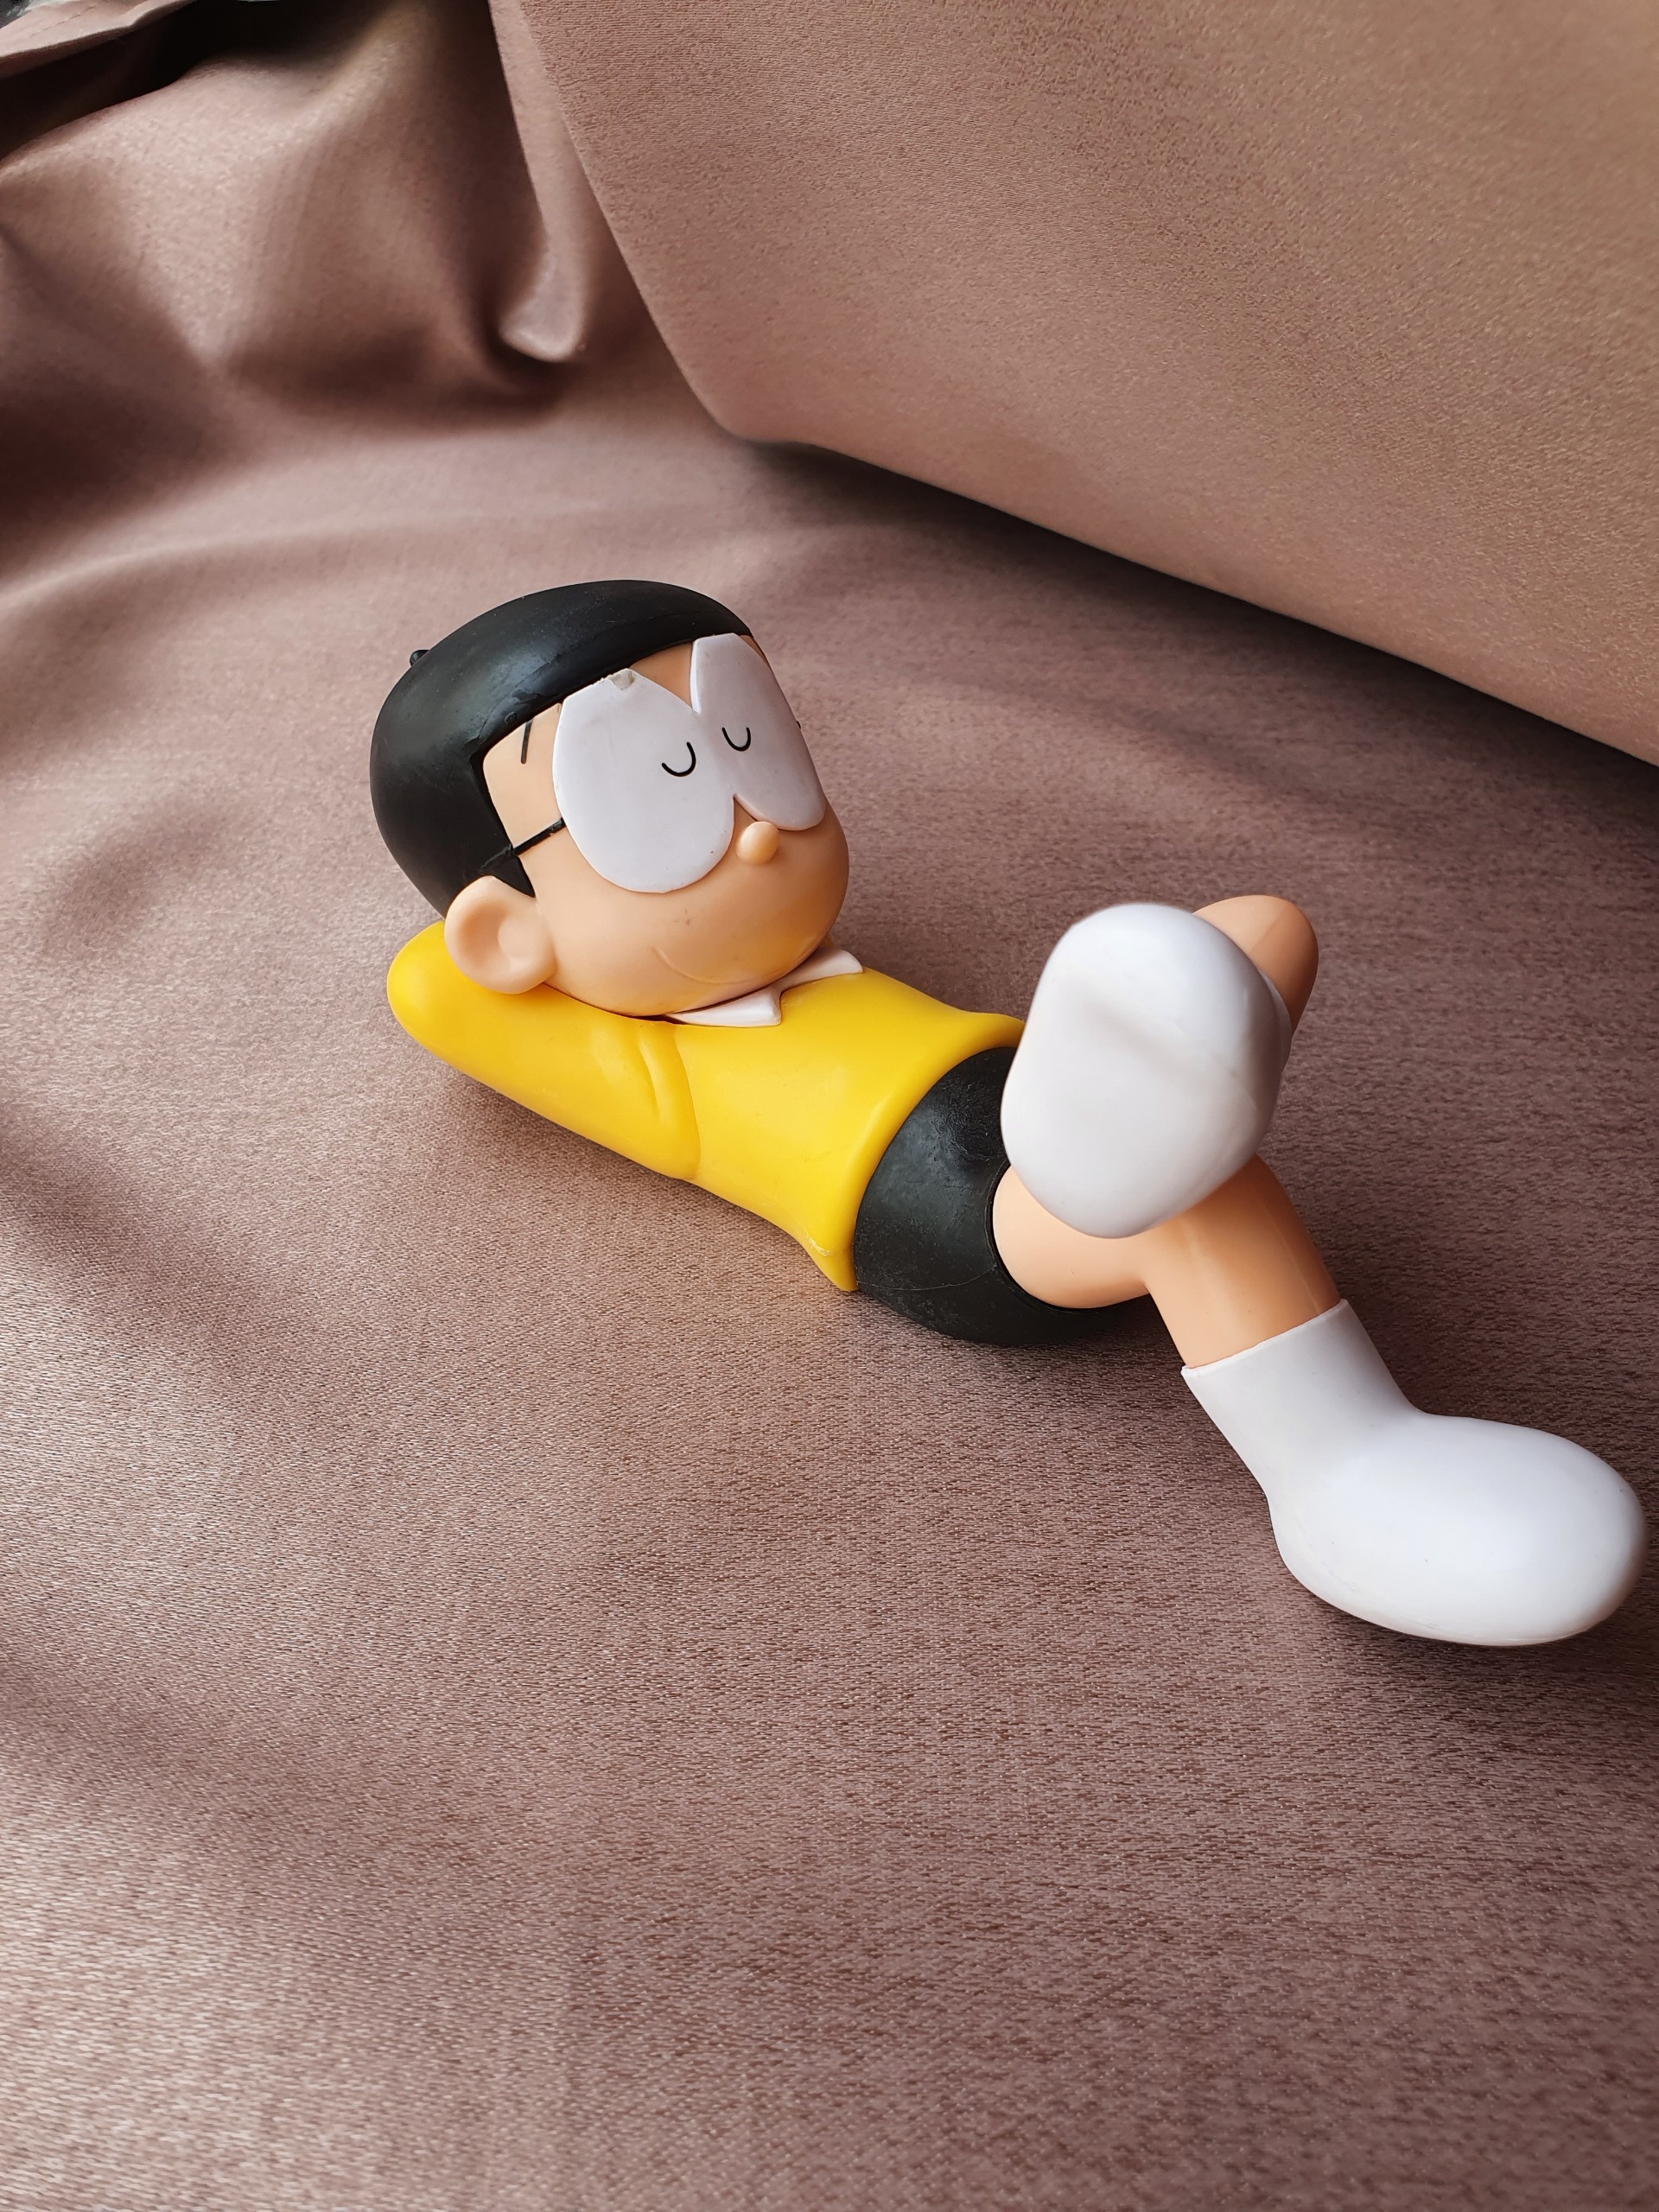 Xem ngay hình ảnh cosplay Nobi Nobita đầy chất lừ! Với phong cách thời trang đầy cá tính, Sửu Nhi sẽ mang đến cho bạn một cái nhìn mới mẻ về chàng trai tài năng nhất trong Doraemon. Đừng bỏ lỡ cơ hội được chiêm ngưỡng trang phục cosplay độc đáo của Nobi Nobita - một nhân vật được yêu thích hàng đầu trong truyện tranh Nhật Bản!